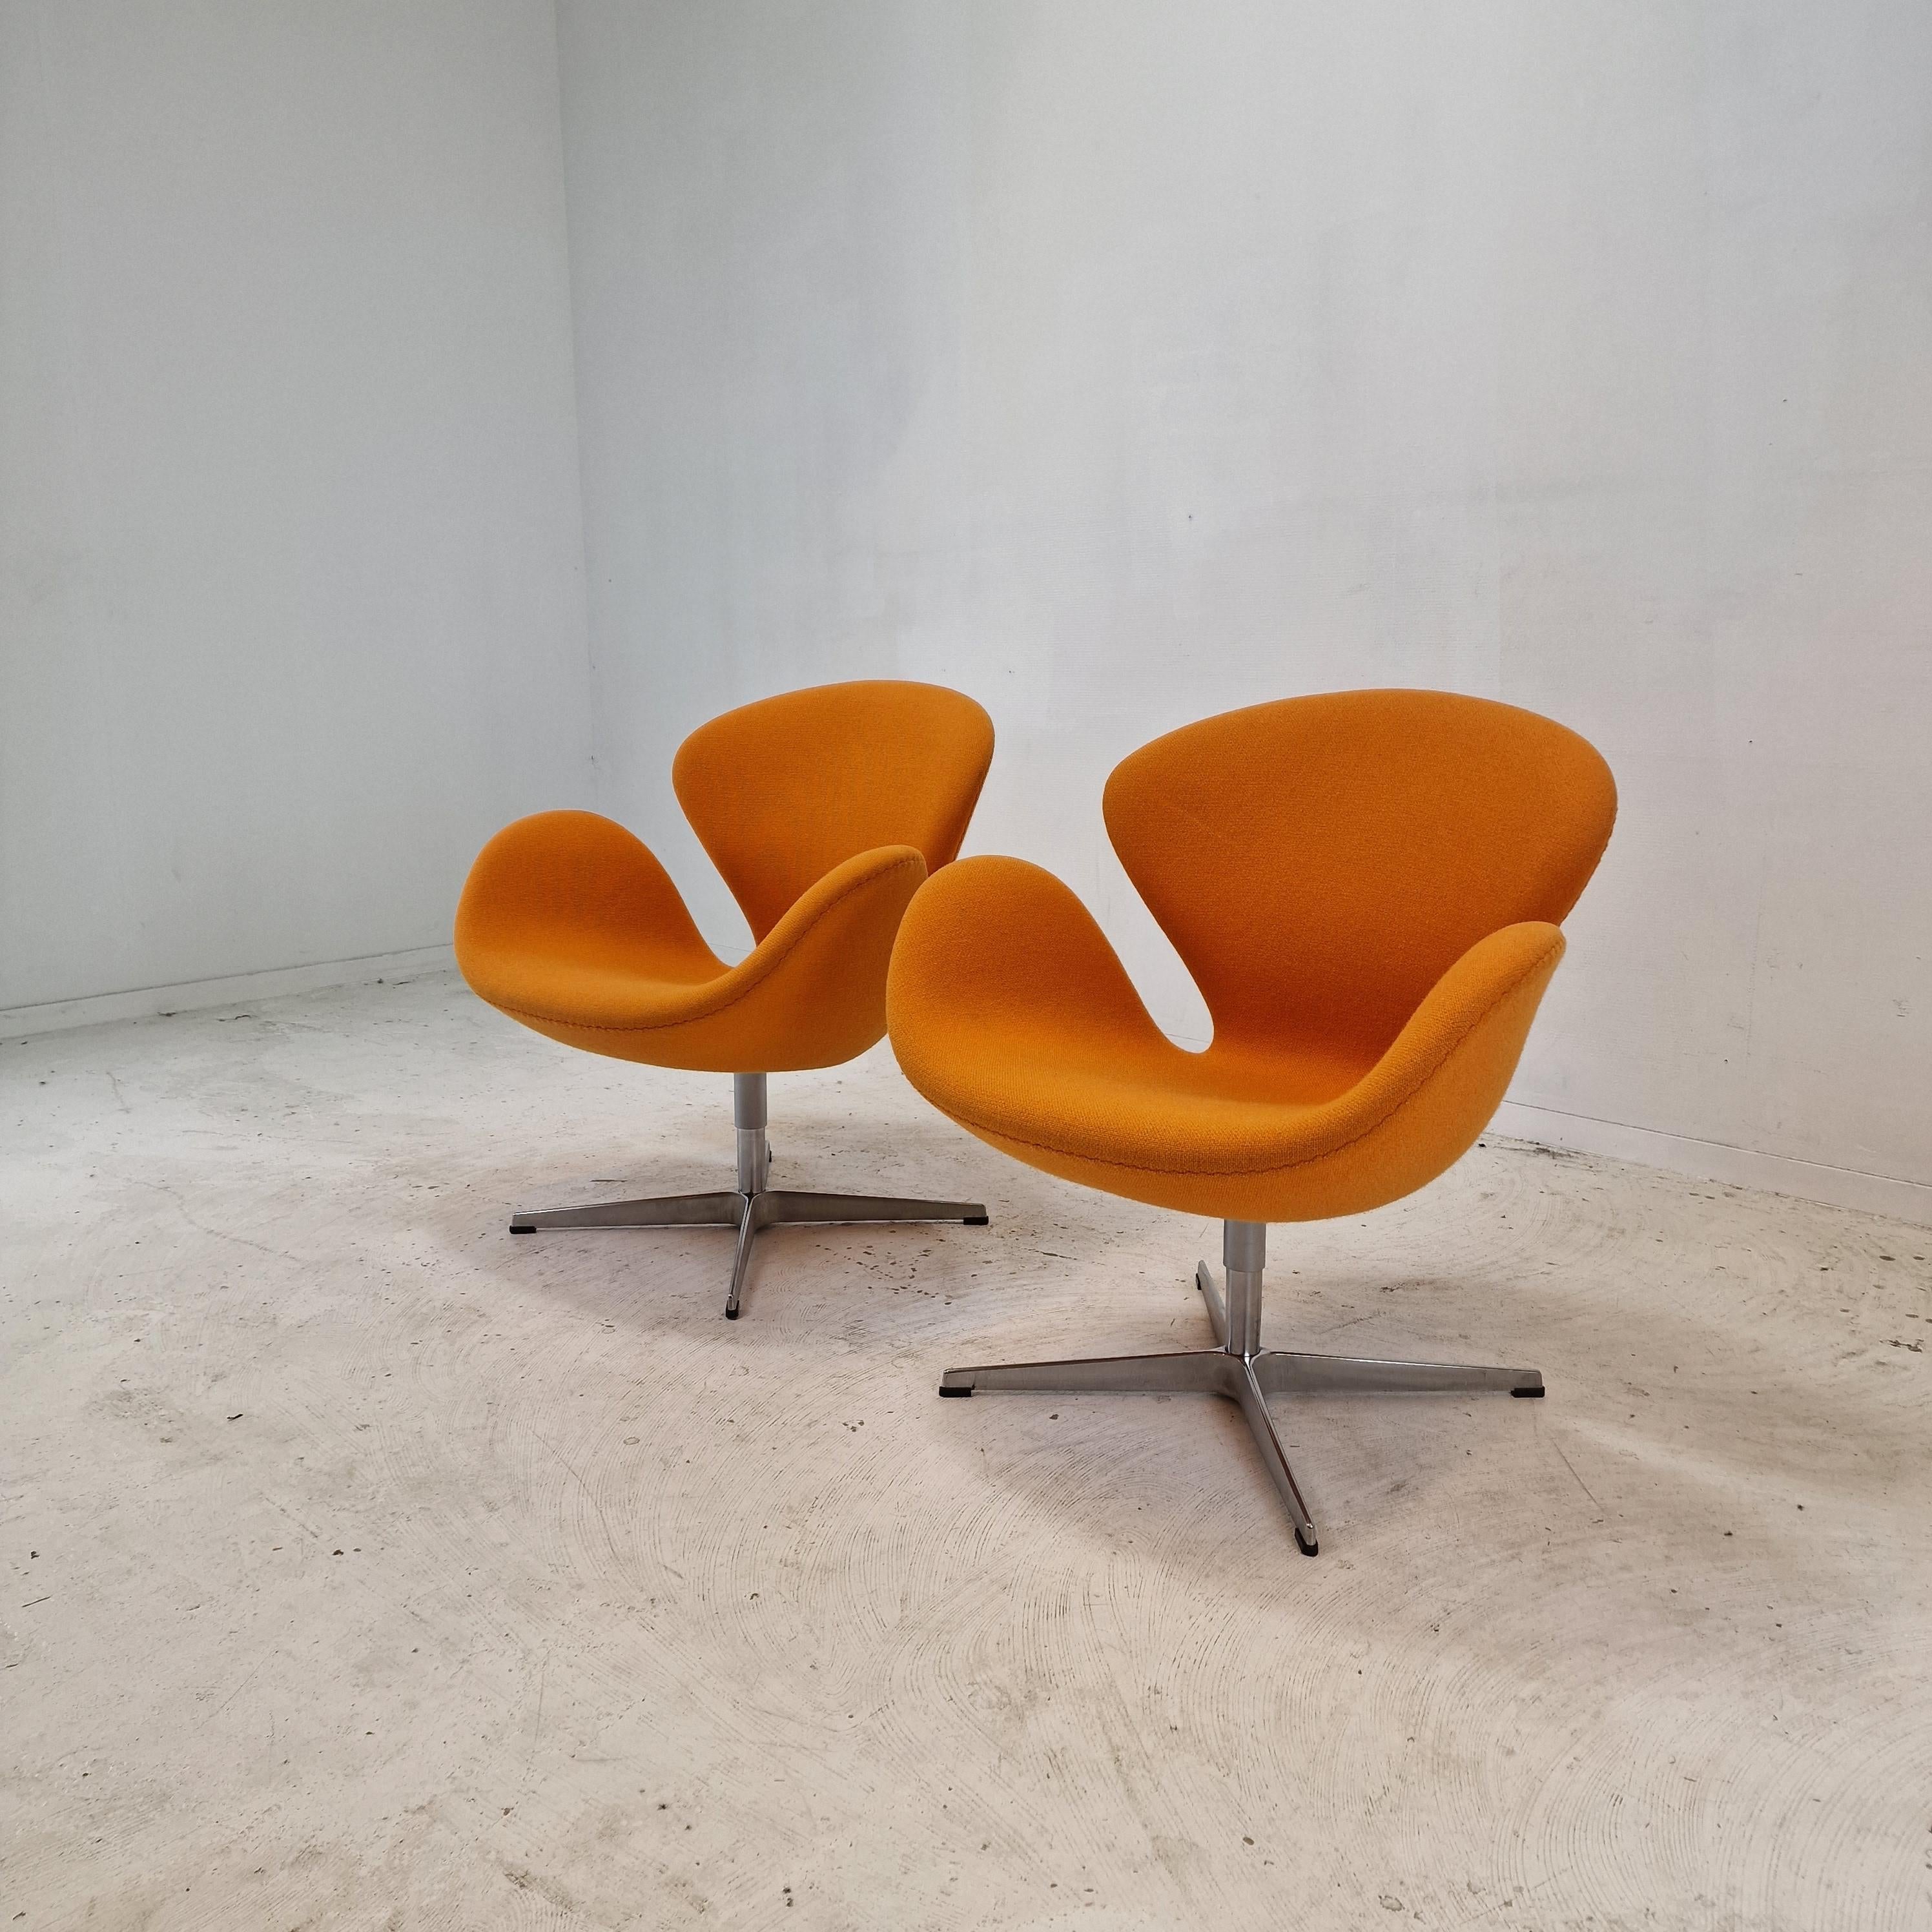 Magnifique ensemble de deux chaises Swan d'origine. 

Ces chaises Swan ont été conçues dans les années 1950 par Arne Jacobsen pour l'hôtel SAS de Copenhague et produites par Fritz Hansen.

Les chaises sont recouvertes d'un magnifique revêtement